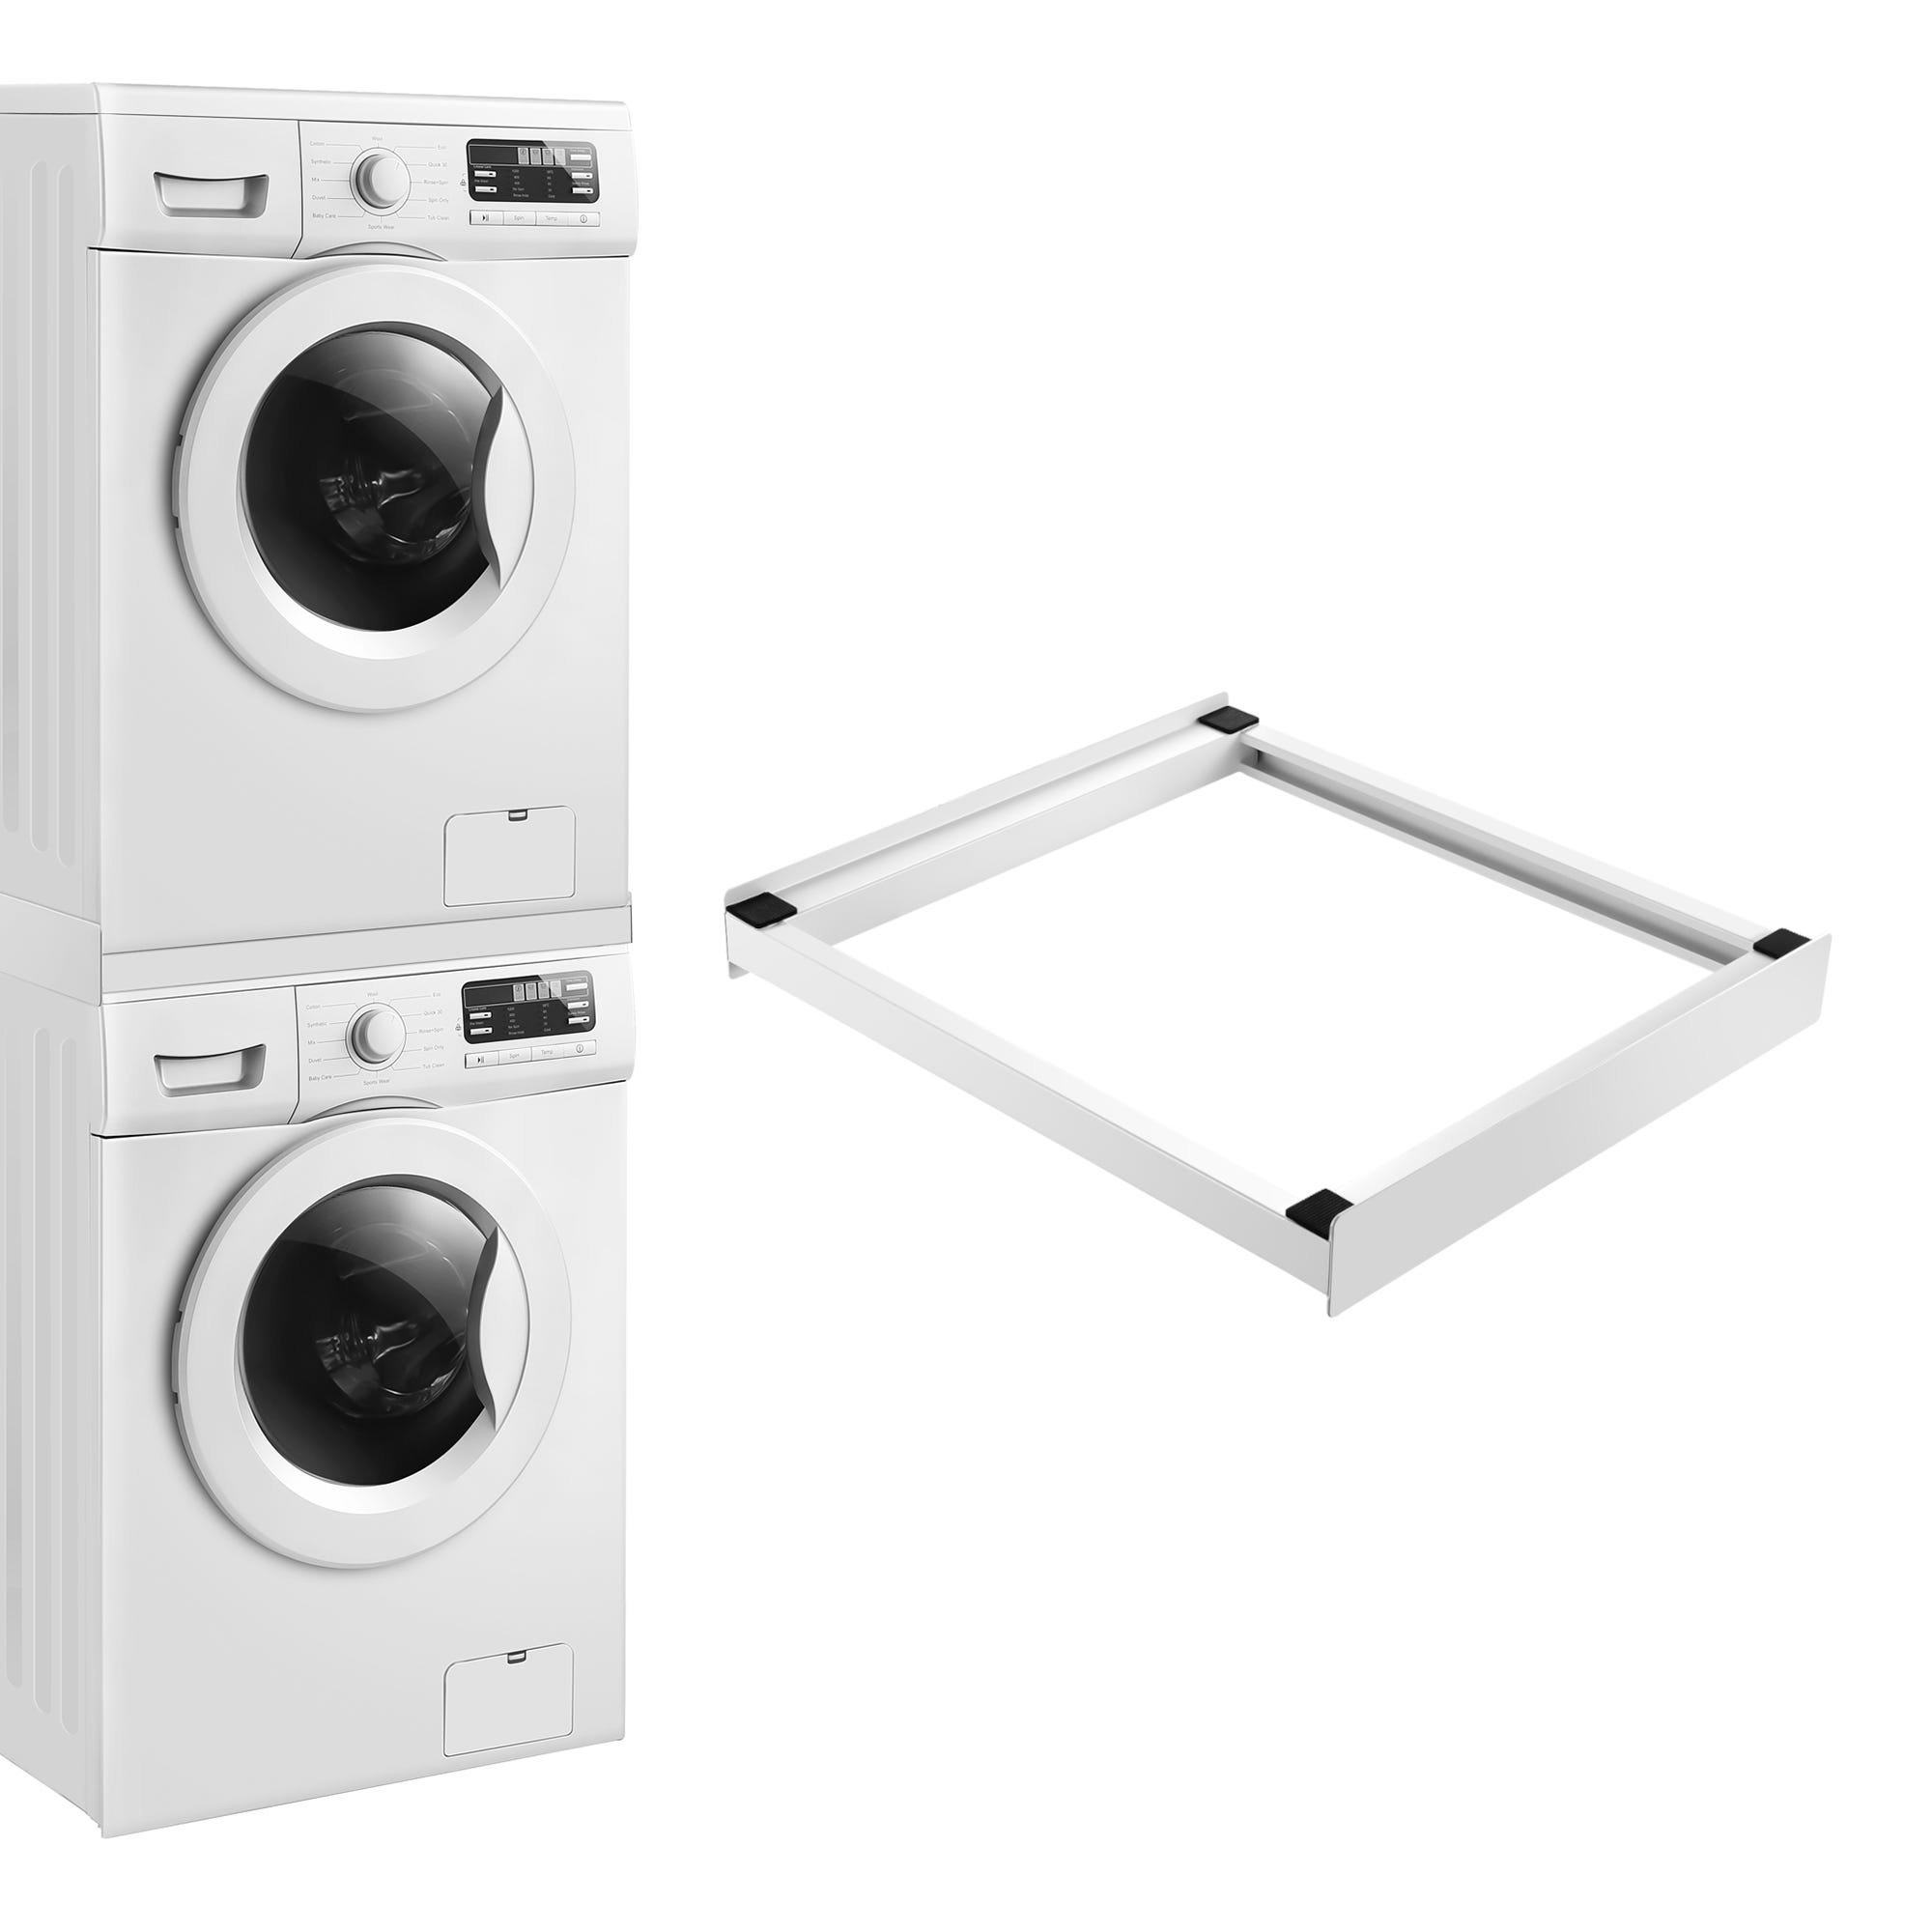 Socle pour machine à laver – 50 cm de haut – renforcé – avec tablette